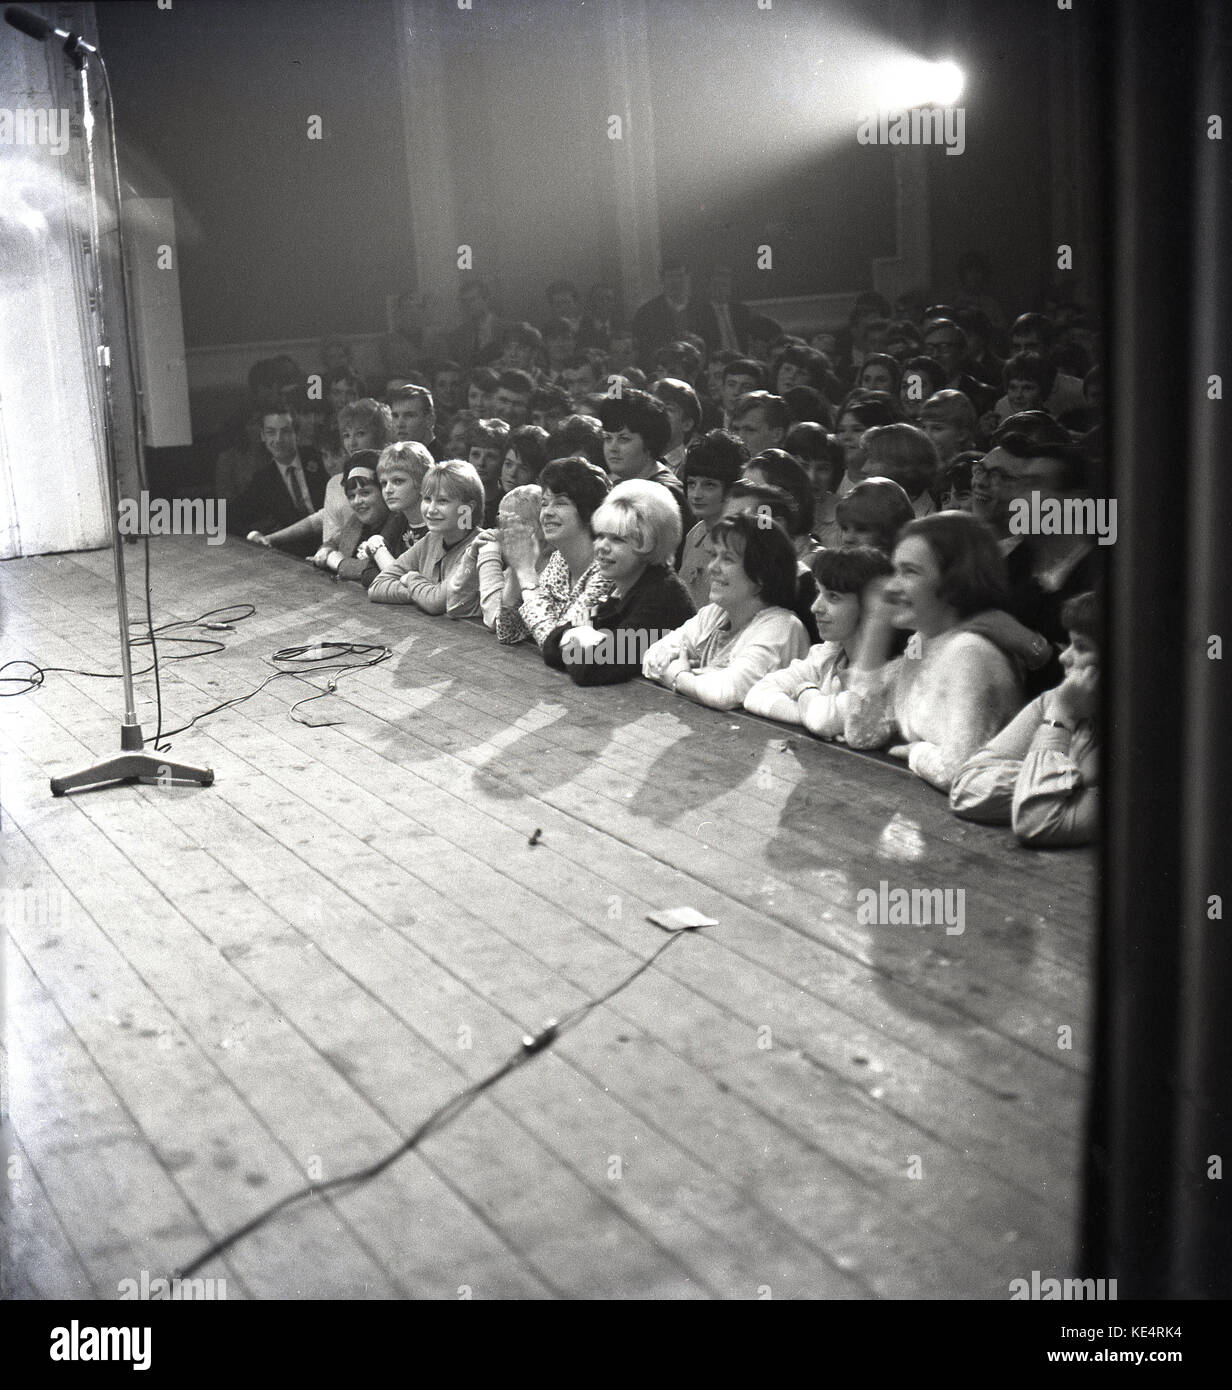 1964, históricos, un micrófono está en la fase de madera en la Bah, Aylesbury, como la audiencia de jóvenes adultos, principalmente mujeres jóvenes, presione contra la parte delantera del escenario en ansiosos anticpation de la noche de ejecución musical, Inglaterra, Reino Unido. Foto de stock